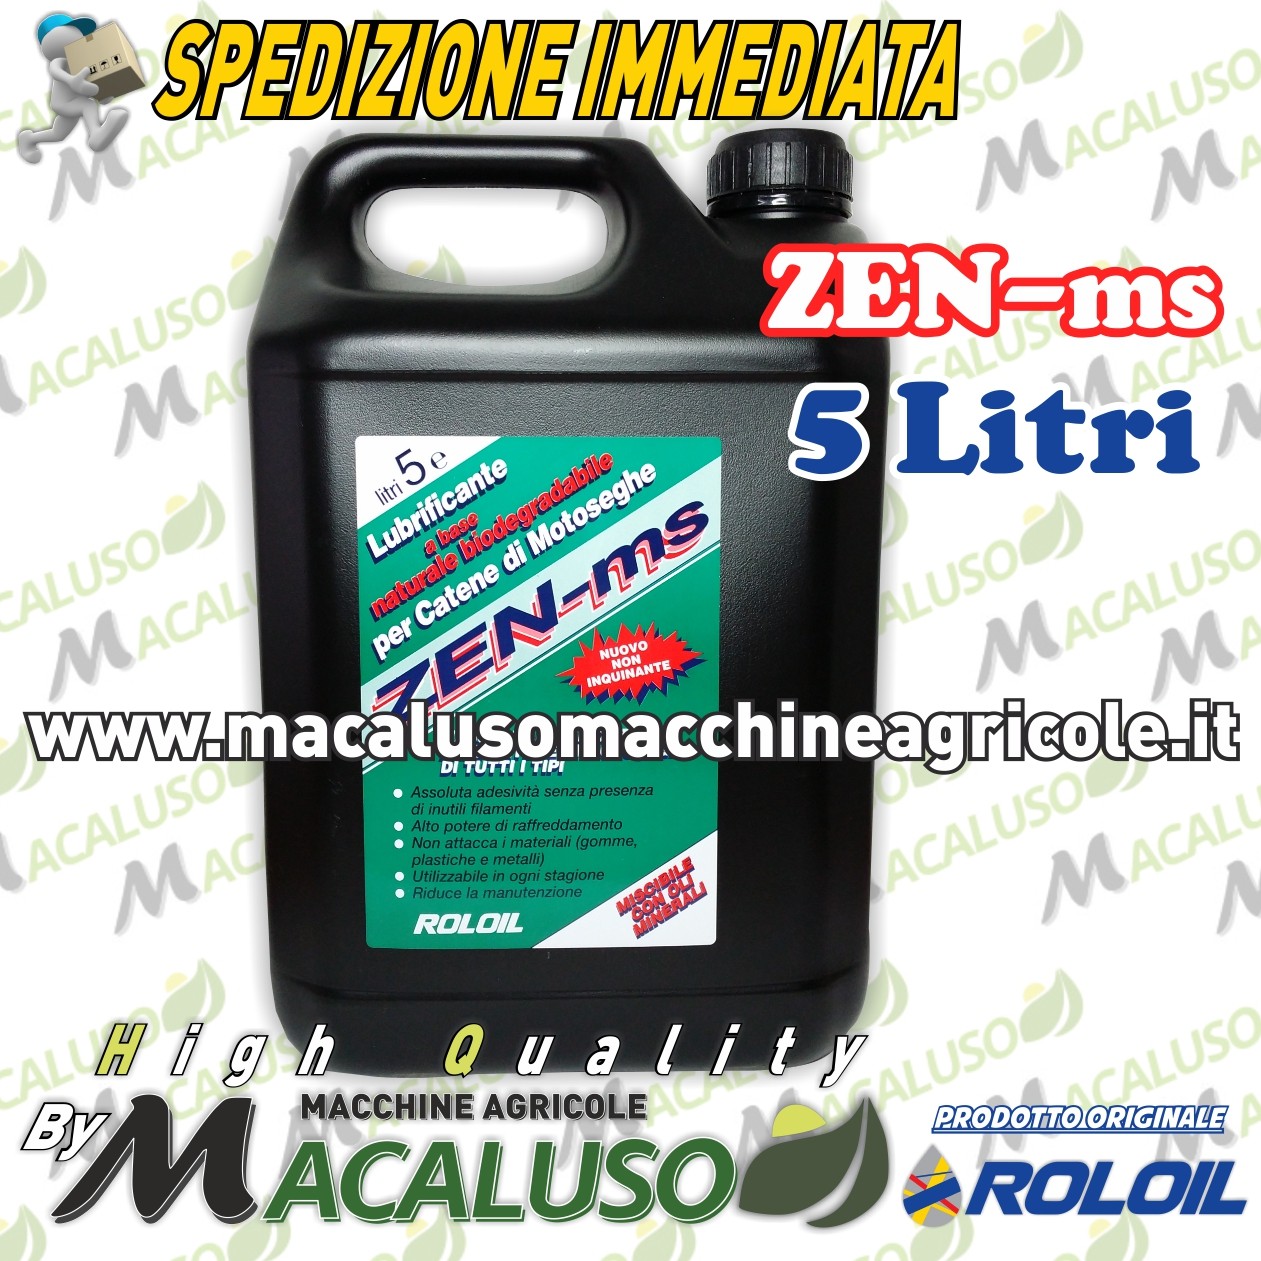 Olio Roloil Zen ms x catena motosega 5 litri lubrificante protettivo -  Macaluso Macchine Agricole